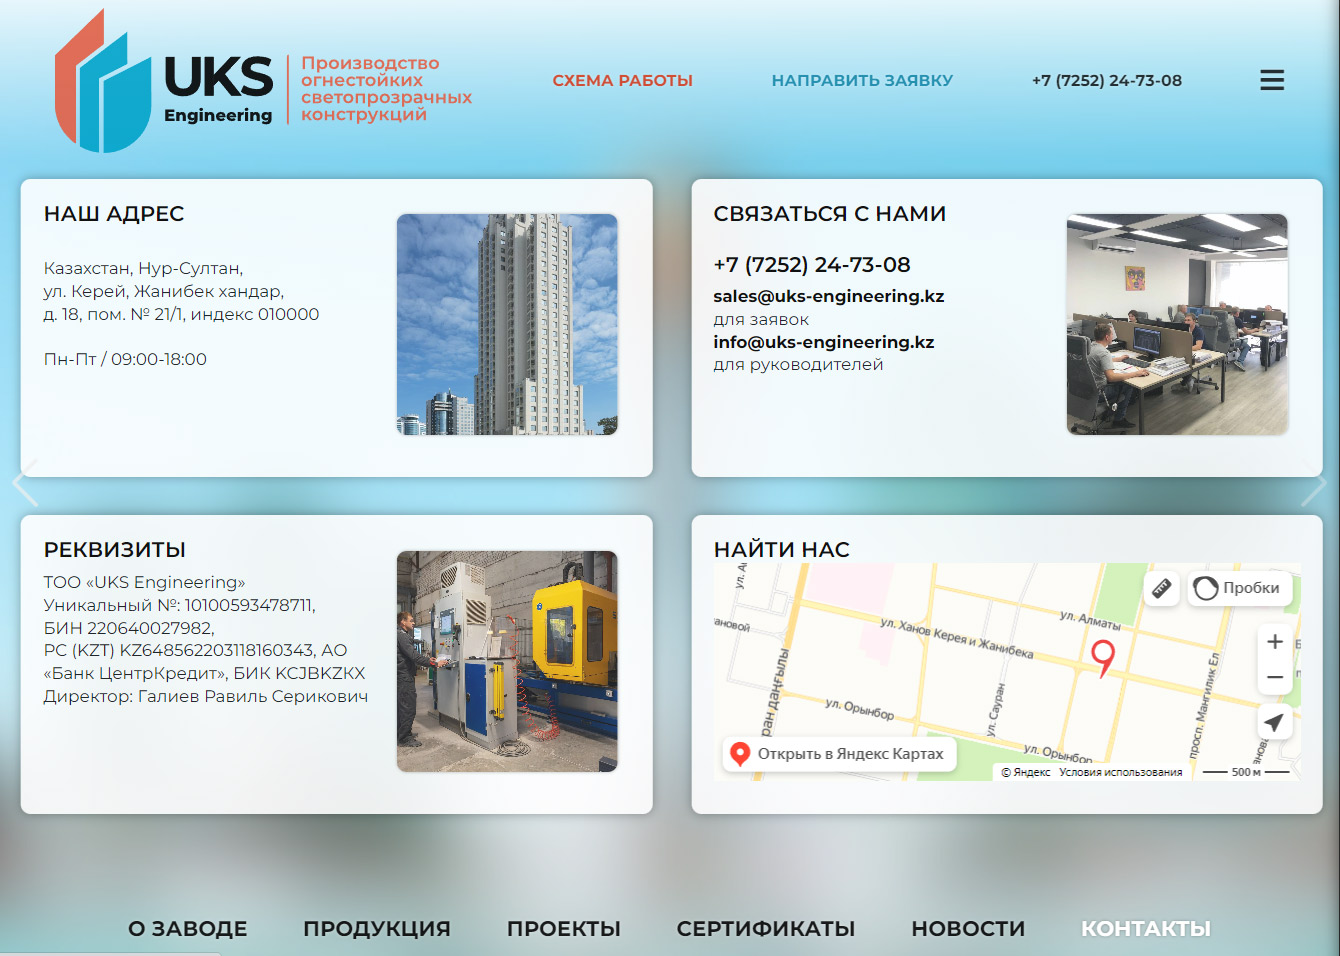 Создание сайта UKS Engineering для Казахстана